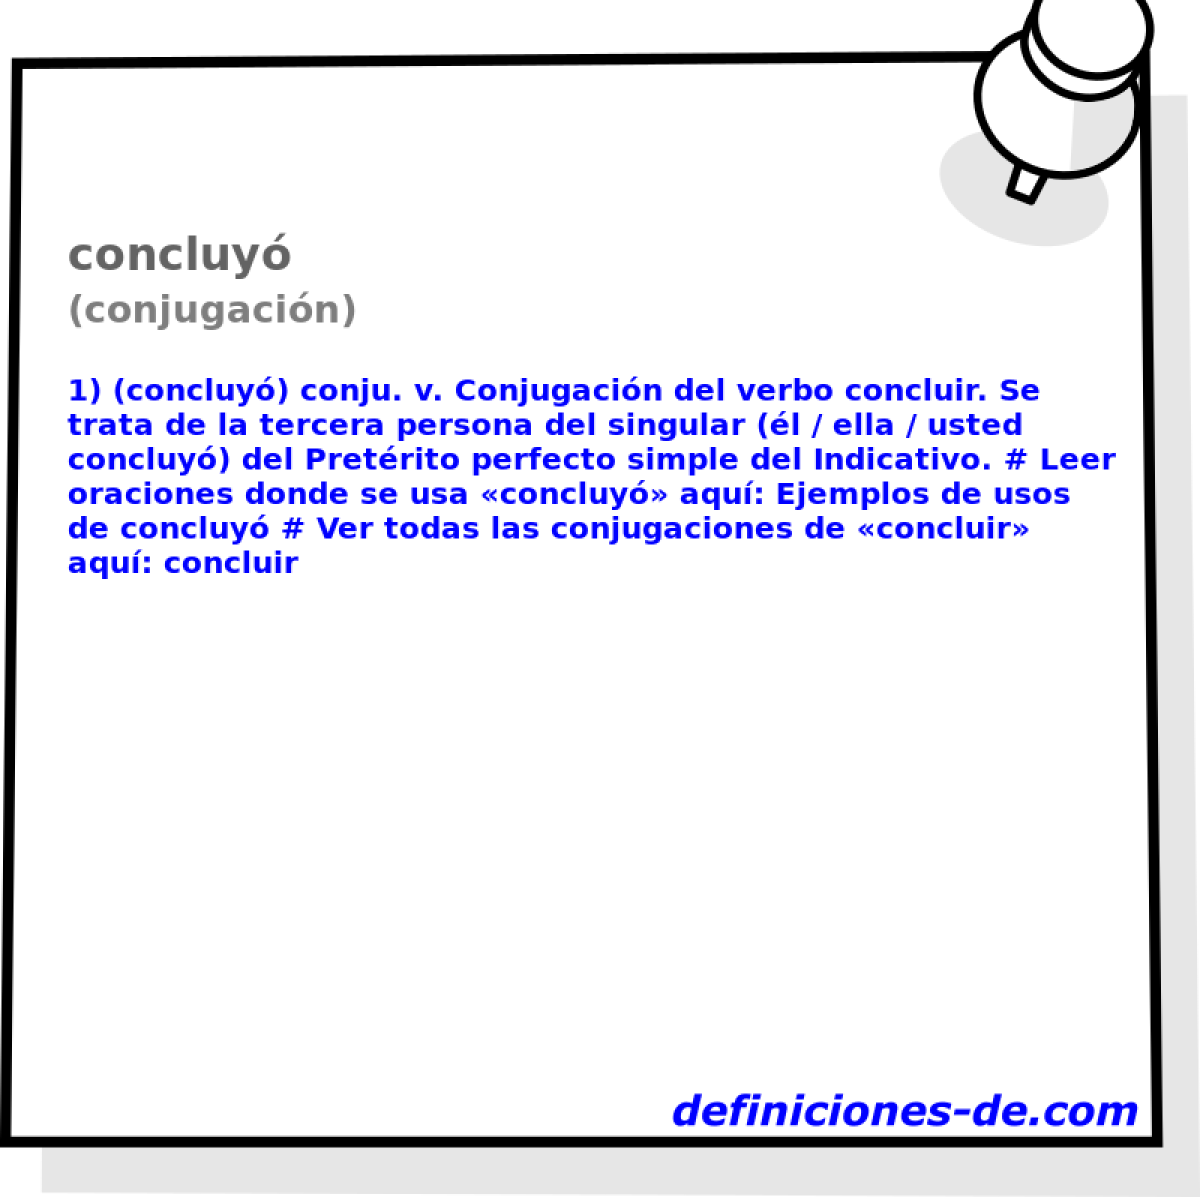 concluy (conjugacin)